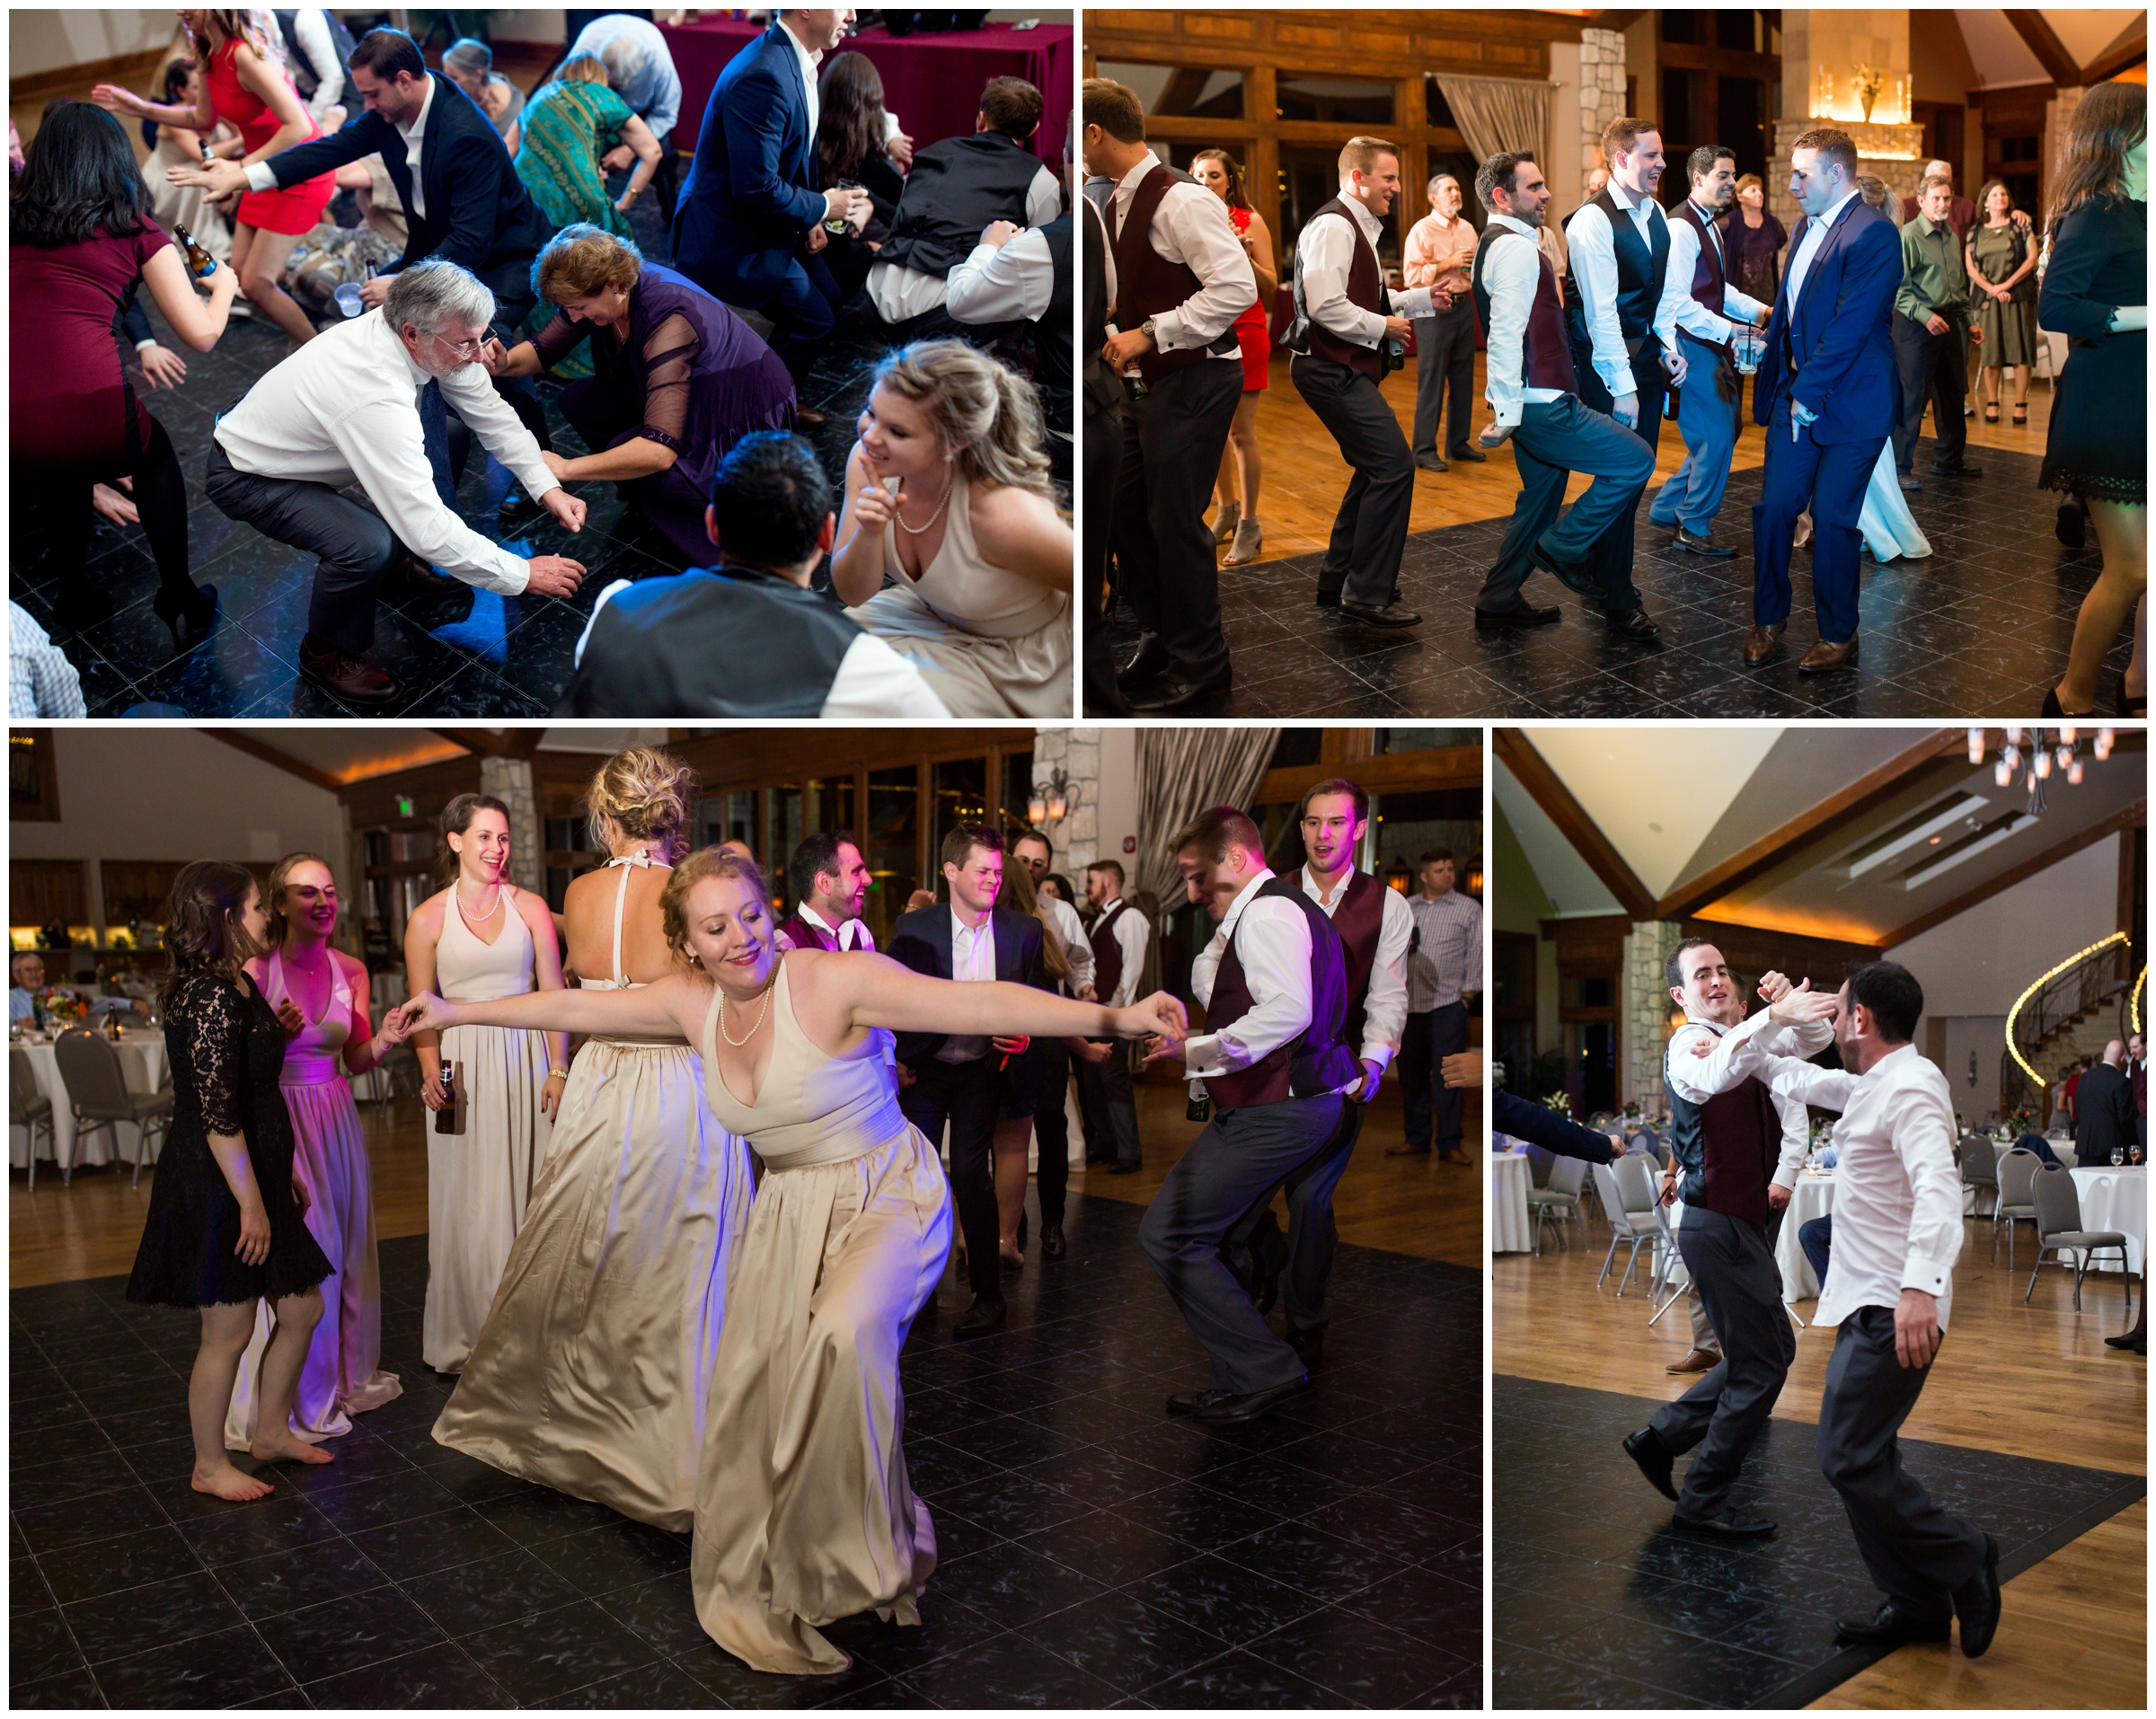 guests dancing at Colorado ballroom wedding reception 